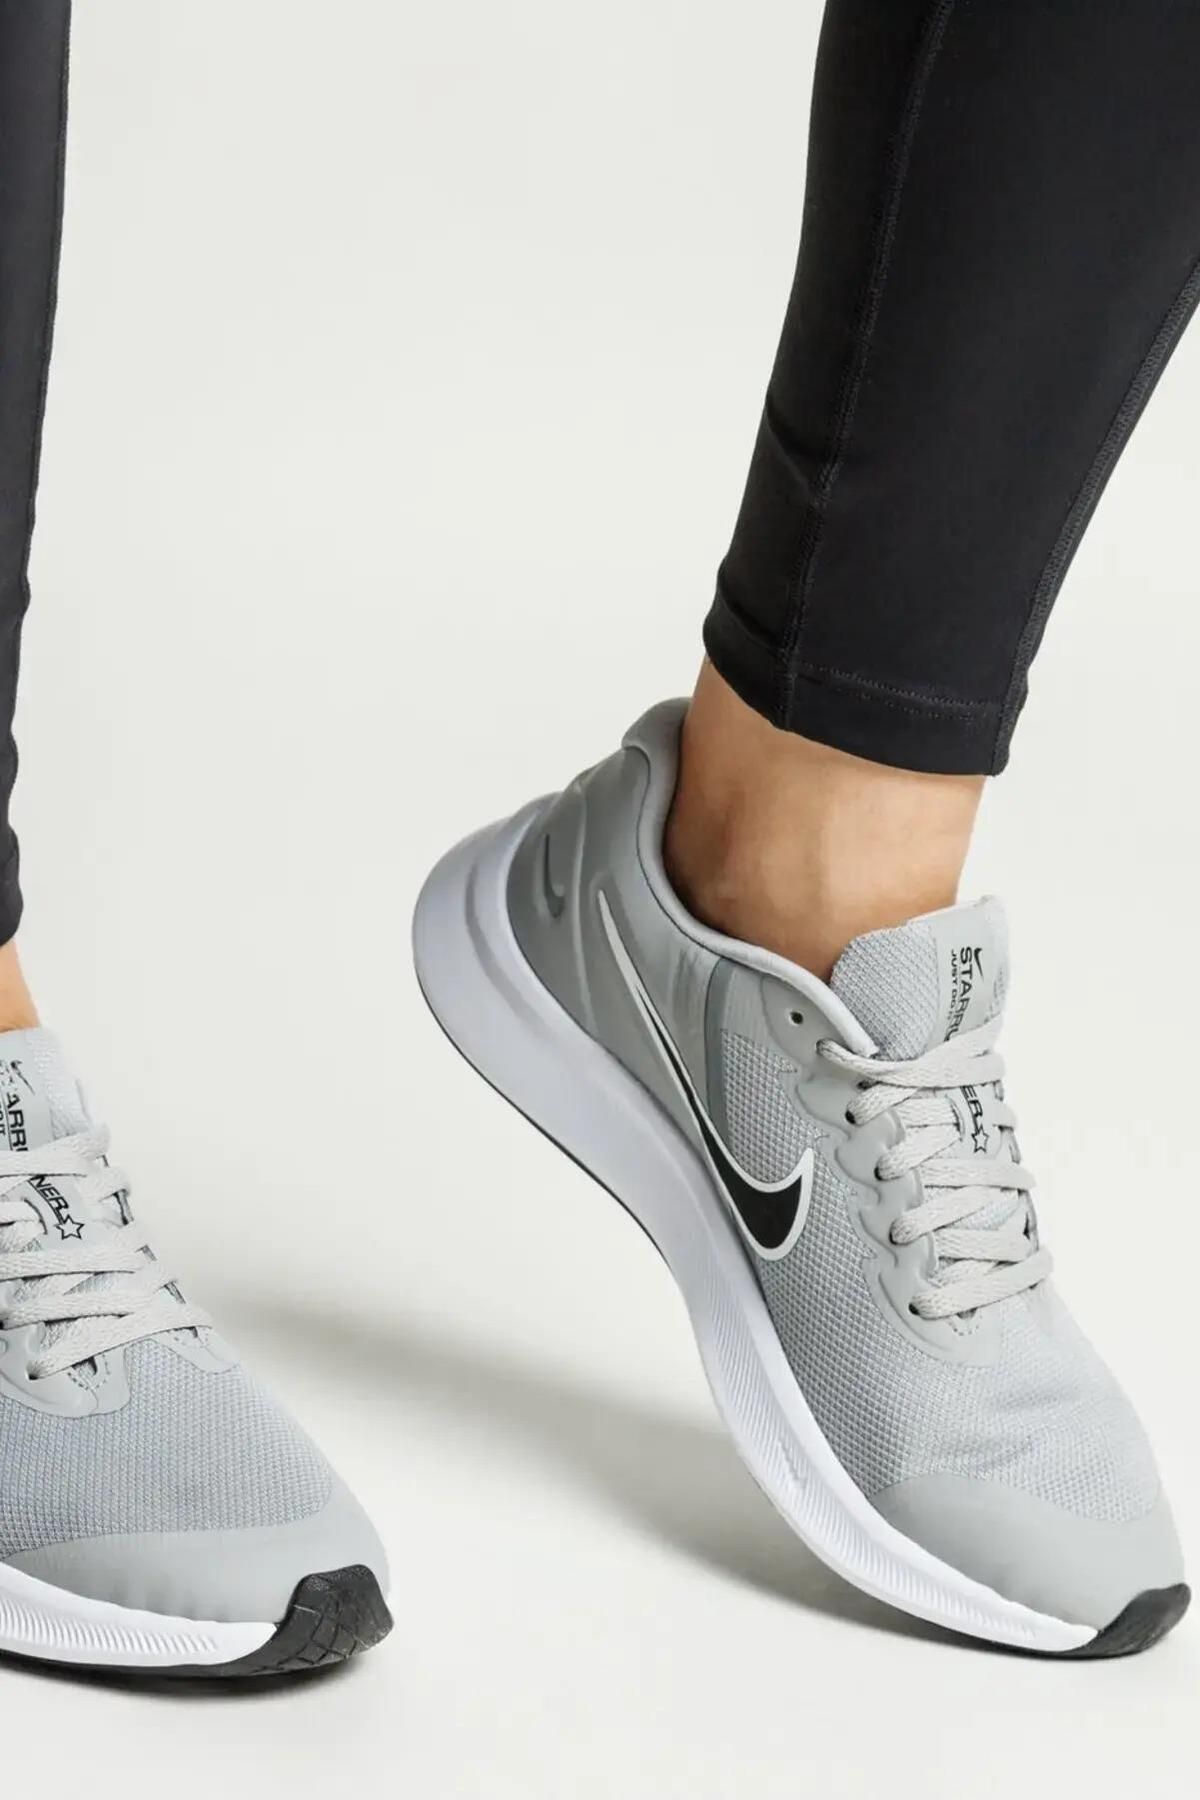 Nike Star Runner Gri Kadın Koşu & Antreman Spor Ayakkabısı ( Dar Kalıp )